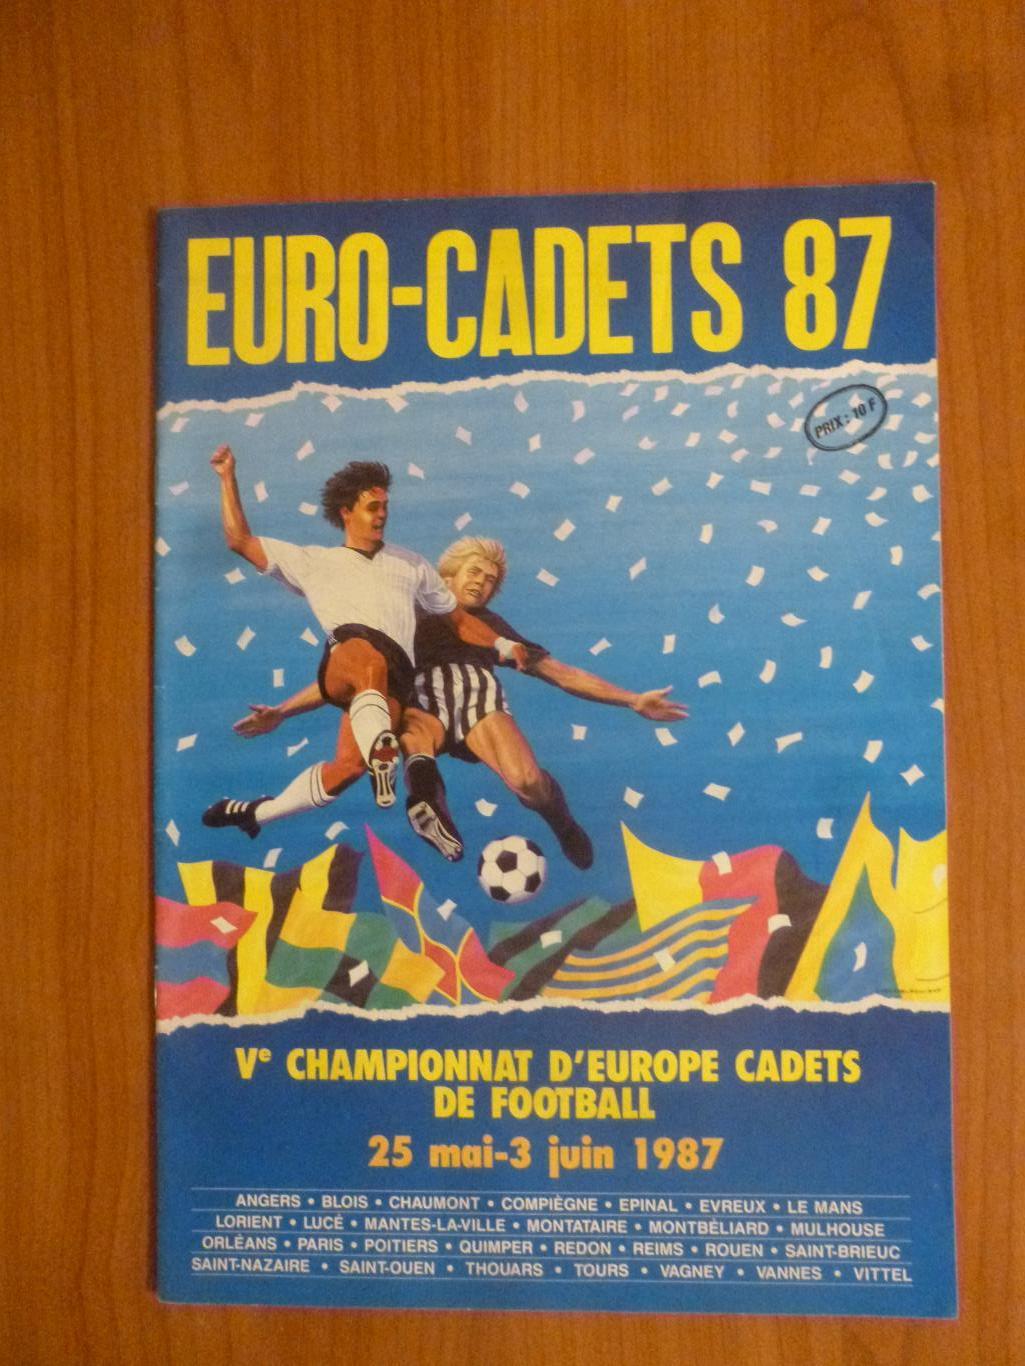 Чемпионат Европы среди кадет (U-16) во Франции 1987, СССР и другие